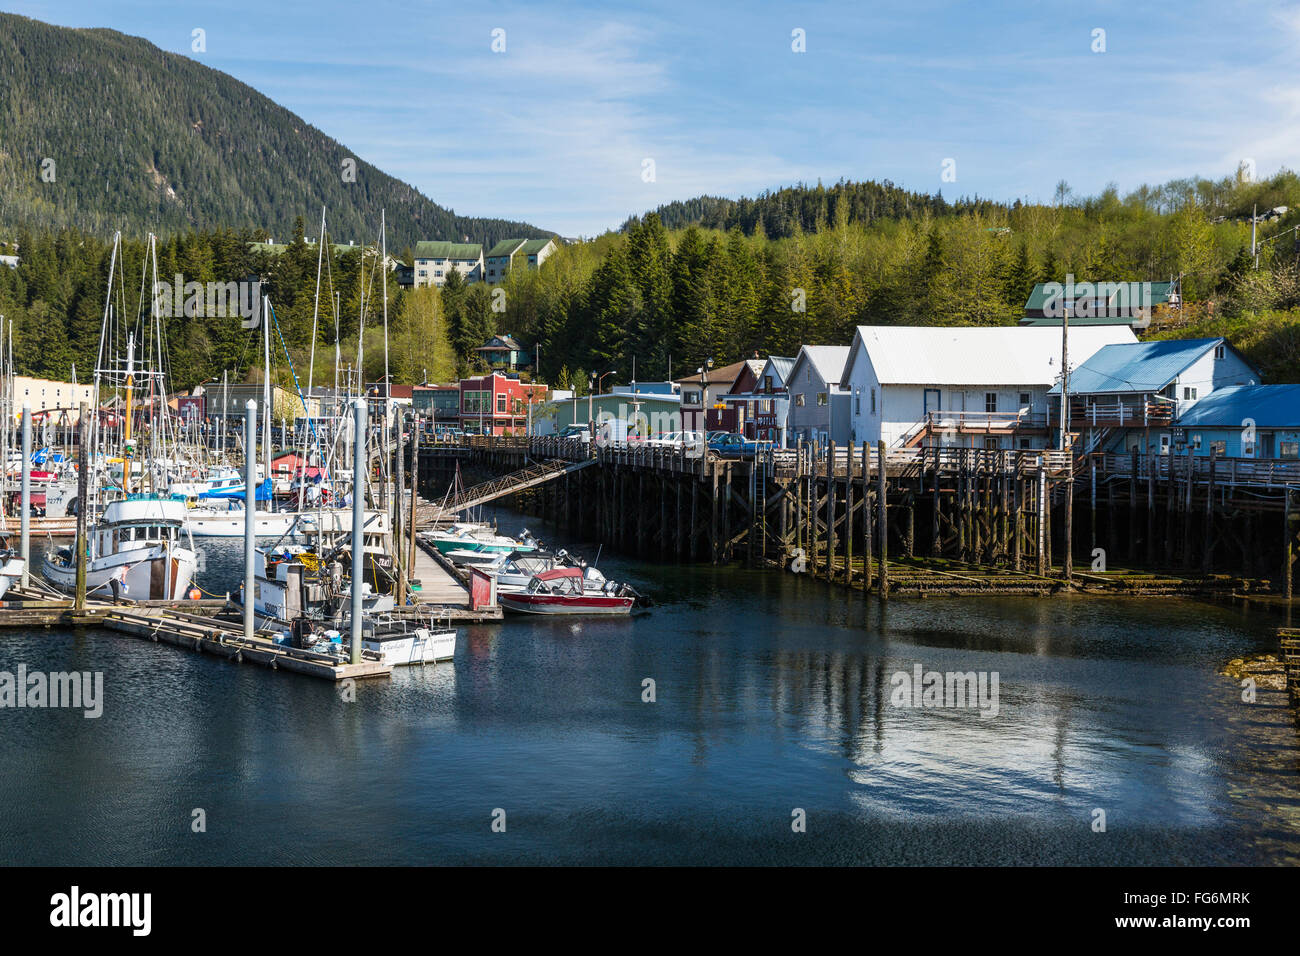 Voiliers et bateaux de pêche à quai dans le port de Ketchikan le long de la rue du Ruisseau, le sud-est de l'Alaska, le printemps Banque D'Images